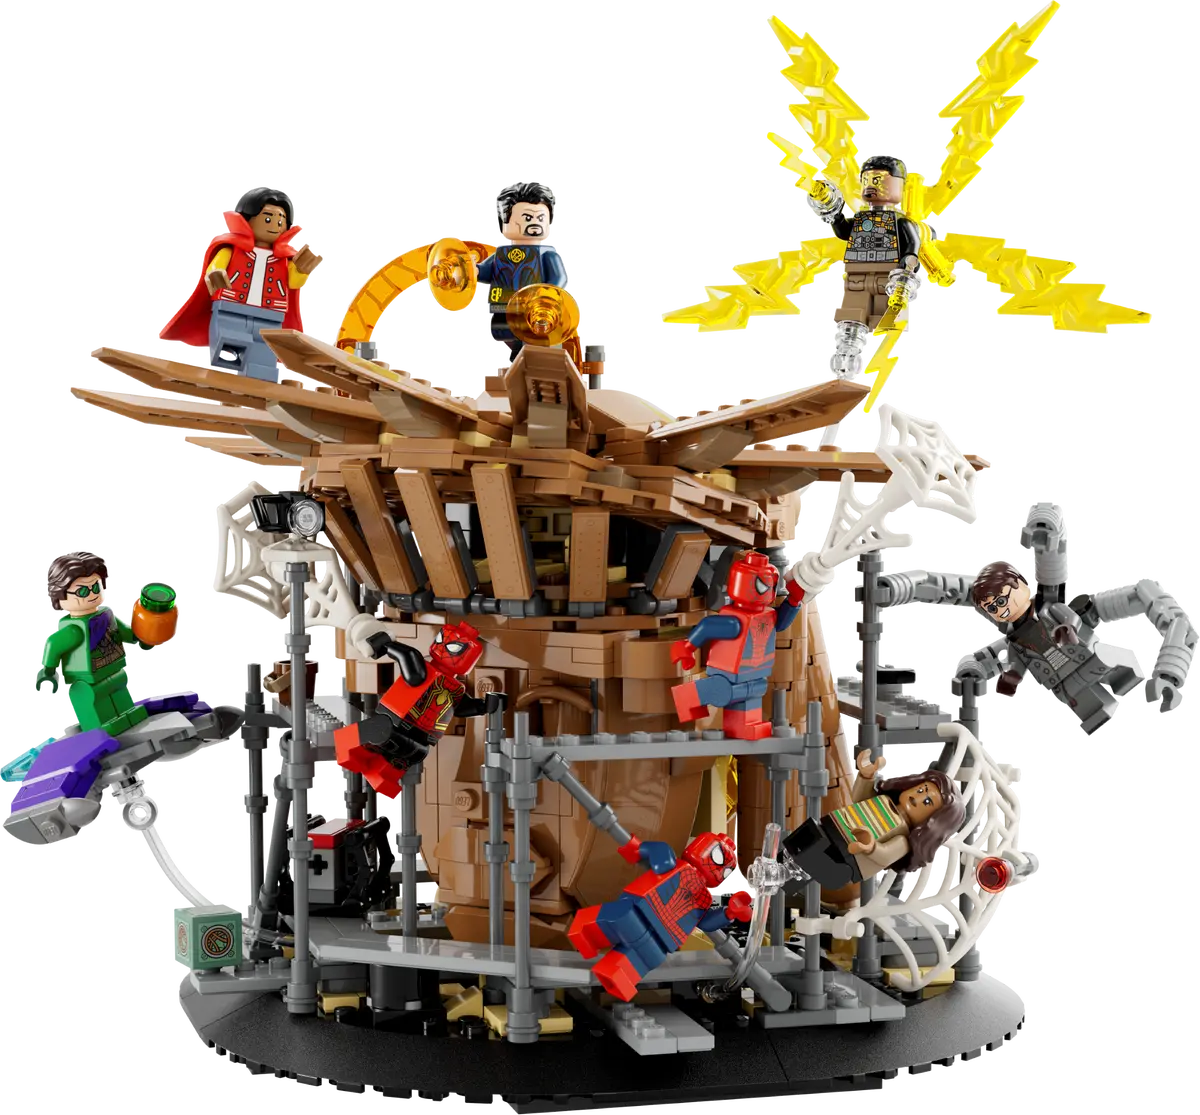 76261 LEGO Marvel Super Heroes - La battaglia finale di Spider-Man